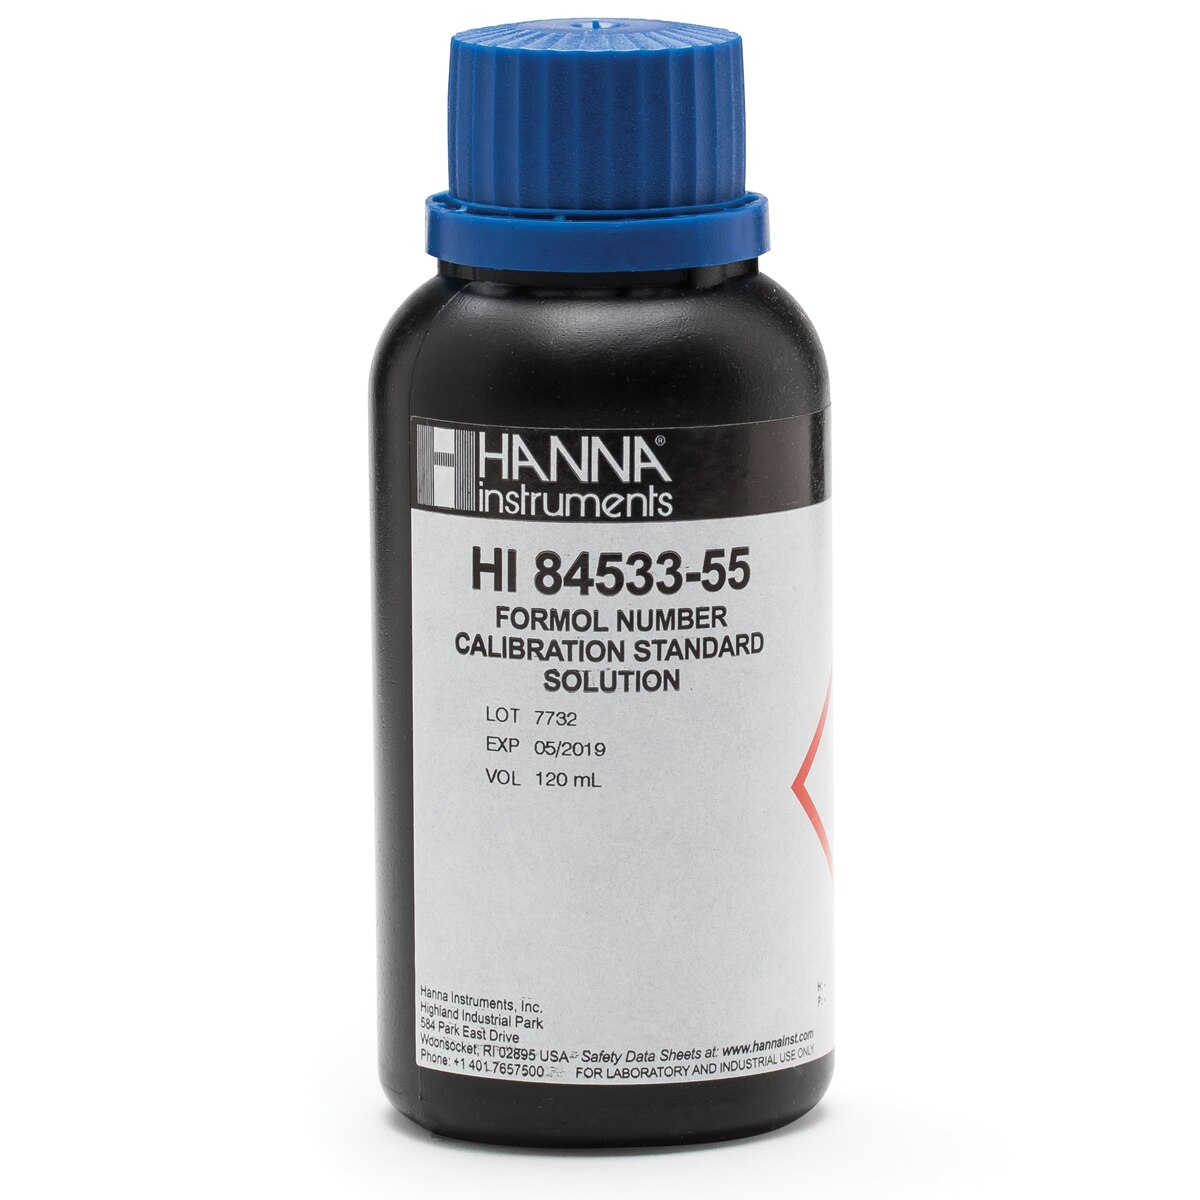 HI84533-55 Formol Number of Wine Pump Calibration Standard (120 mL)